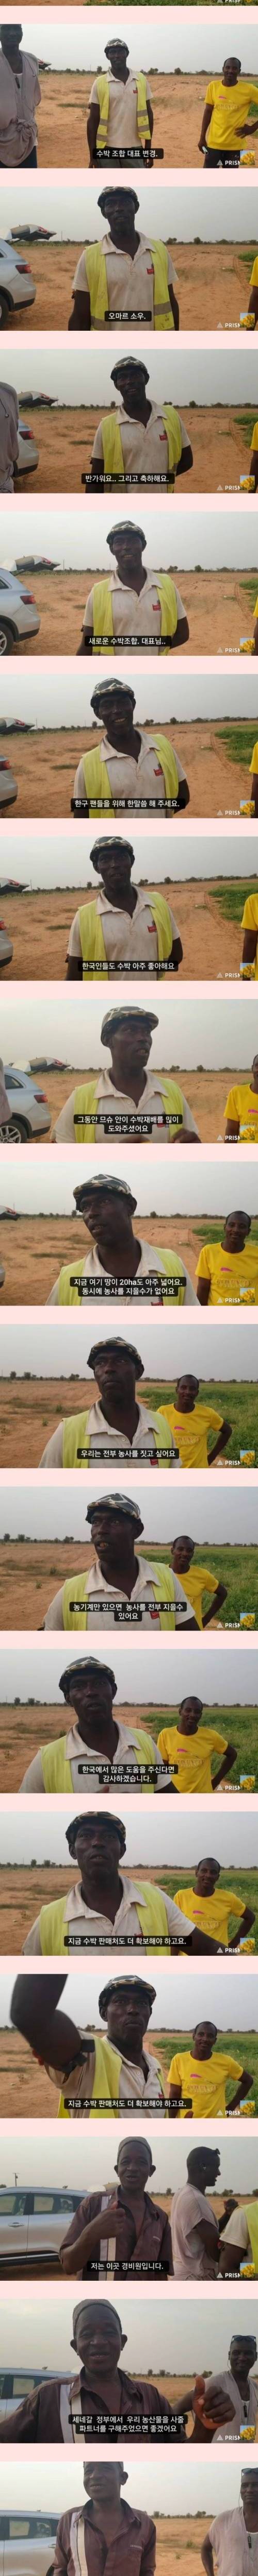 [스압] 세네갈에서 한국 수박 재배하는 농장..jpg